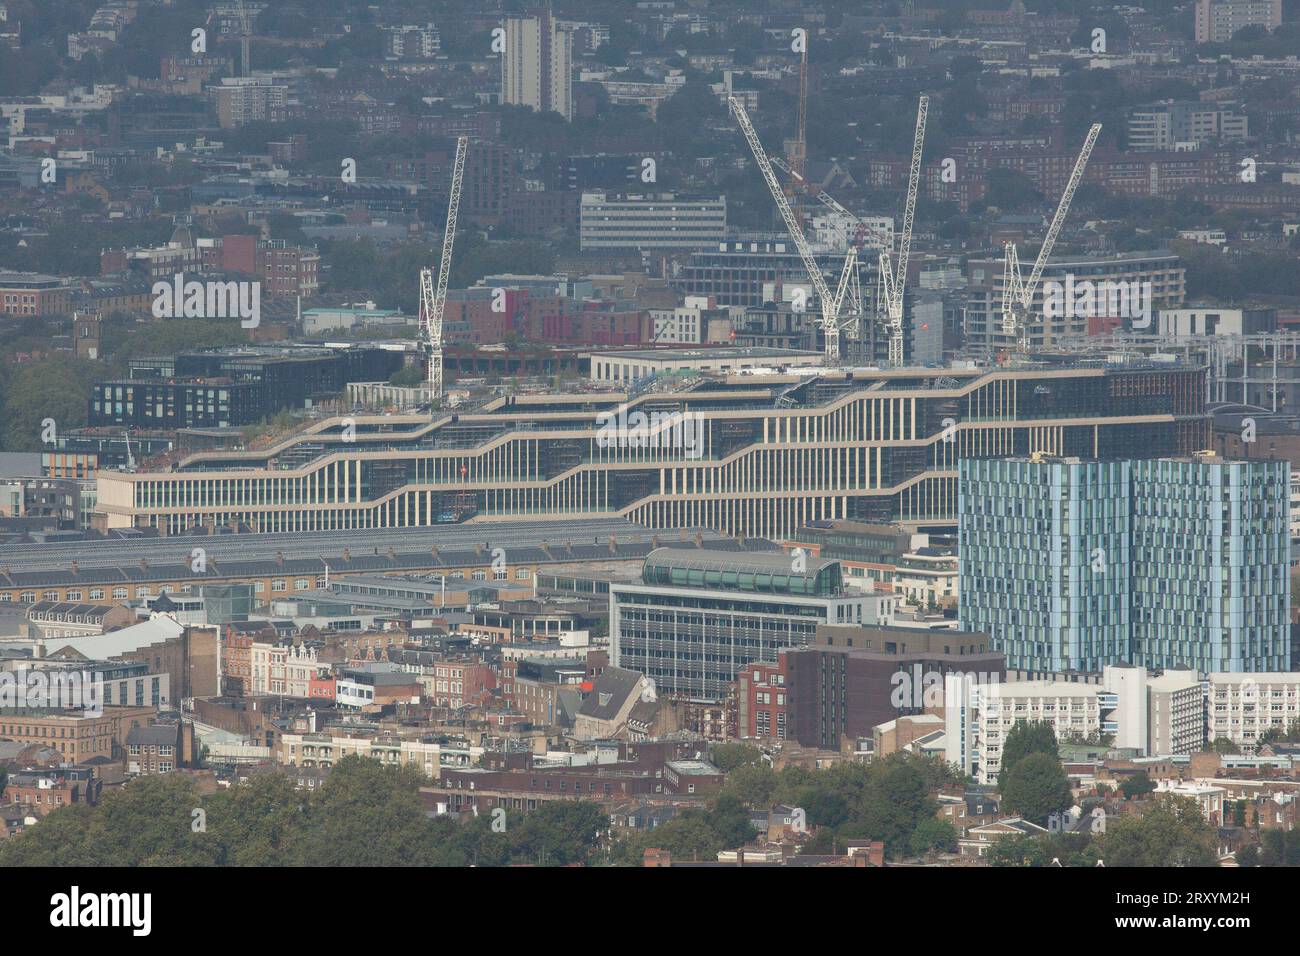 Londra, Regno Unito, 27 settembre 2023: Il Crick Institute visto da un nuovo punto di vista libero nella città di Londra, chiamato Horizon22. È il punto di vista più alto d'Europa, con i visitatori che hanno una vista chiara sul Cheesegrater e sullo Shard, e proprio dall'altra parte di Londra. Anna Watson/Alamy Live News Foto Stock